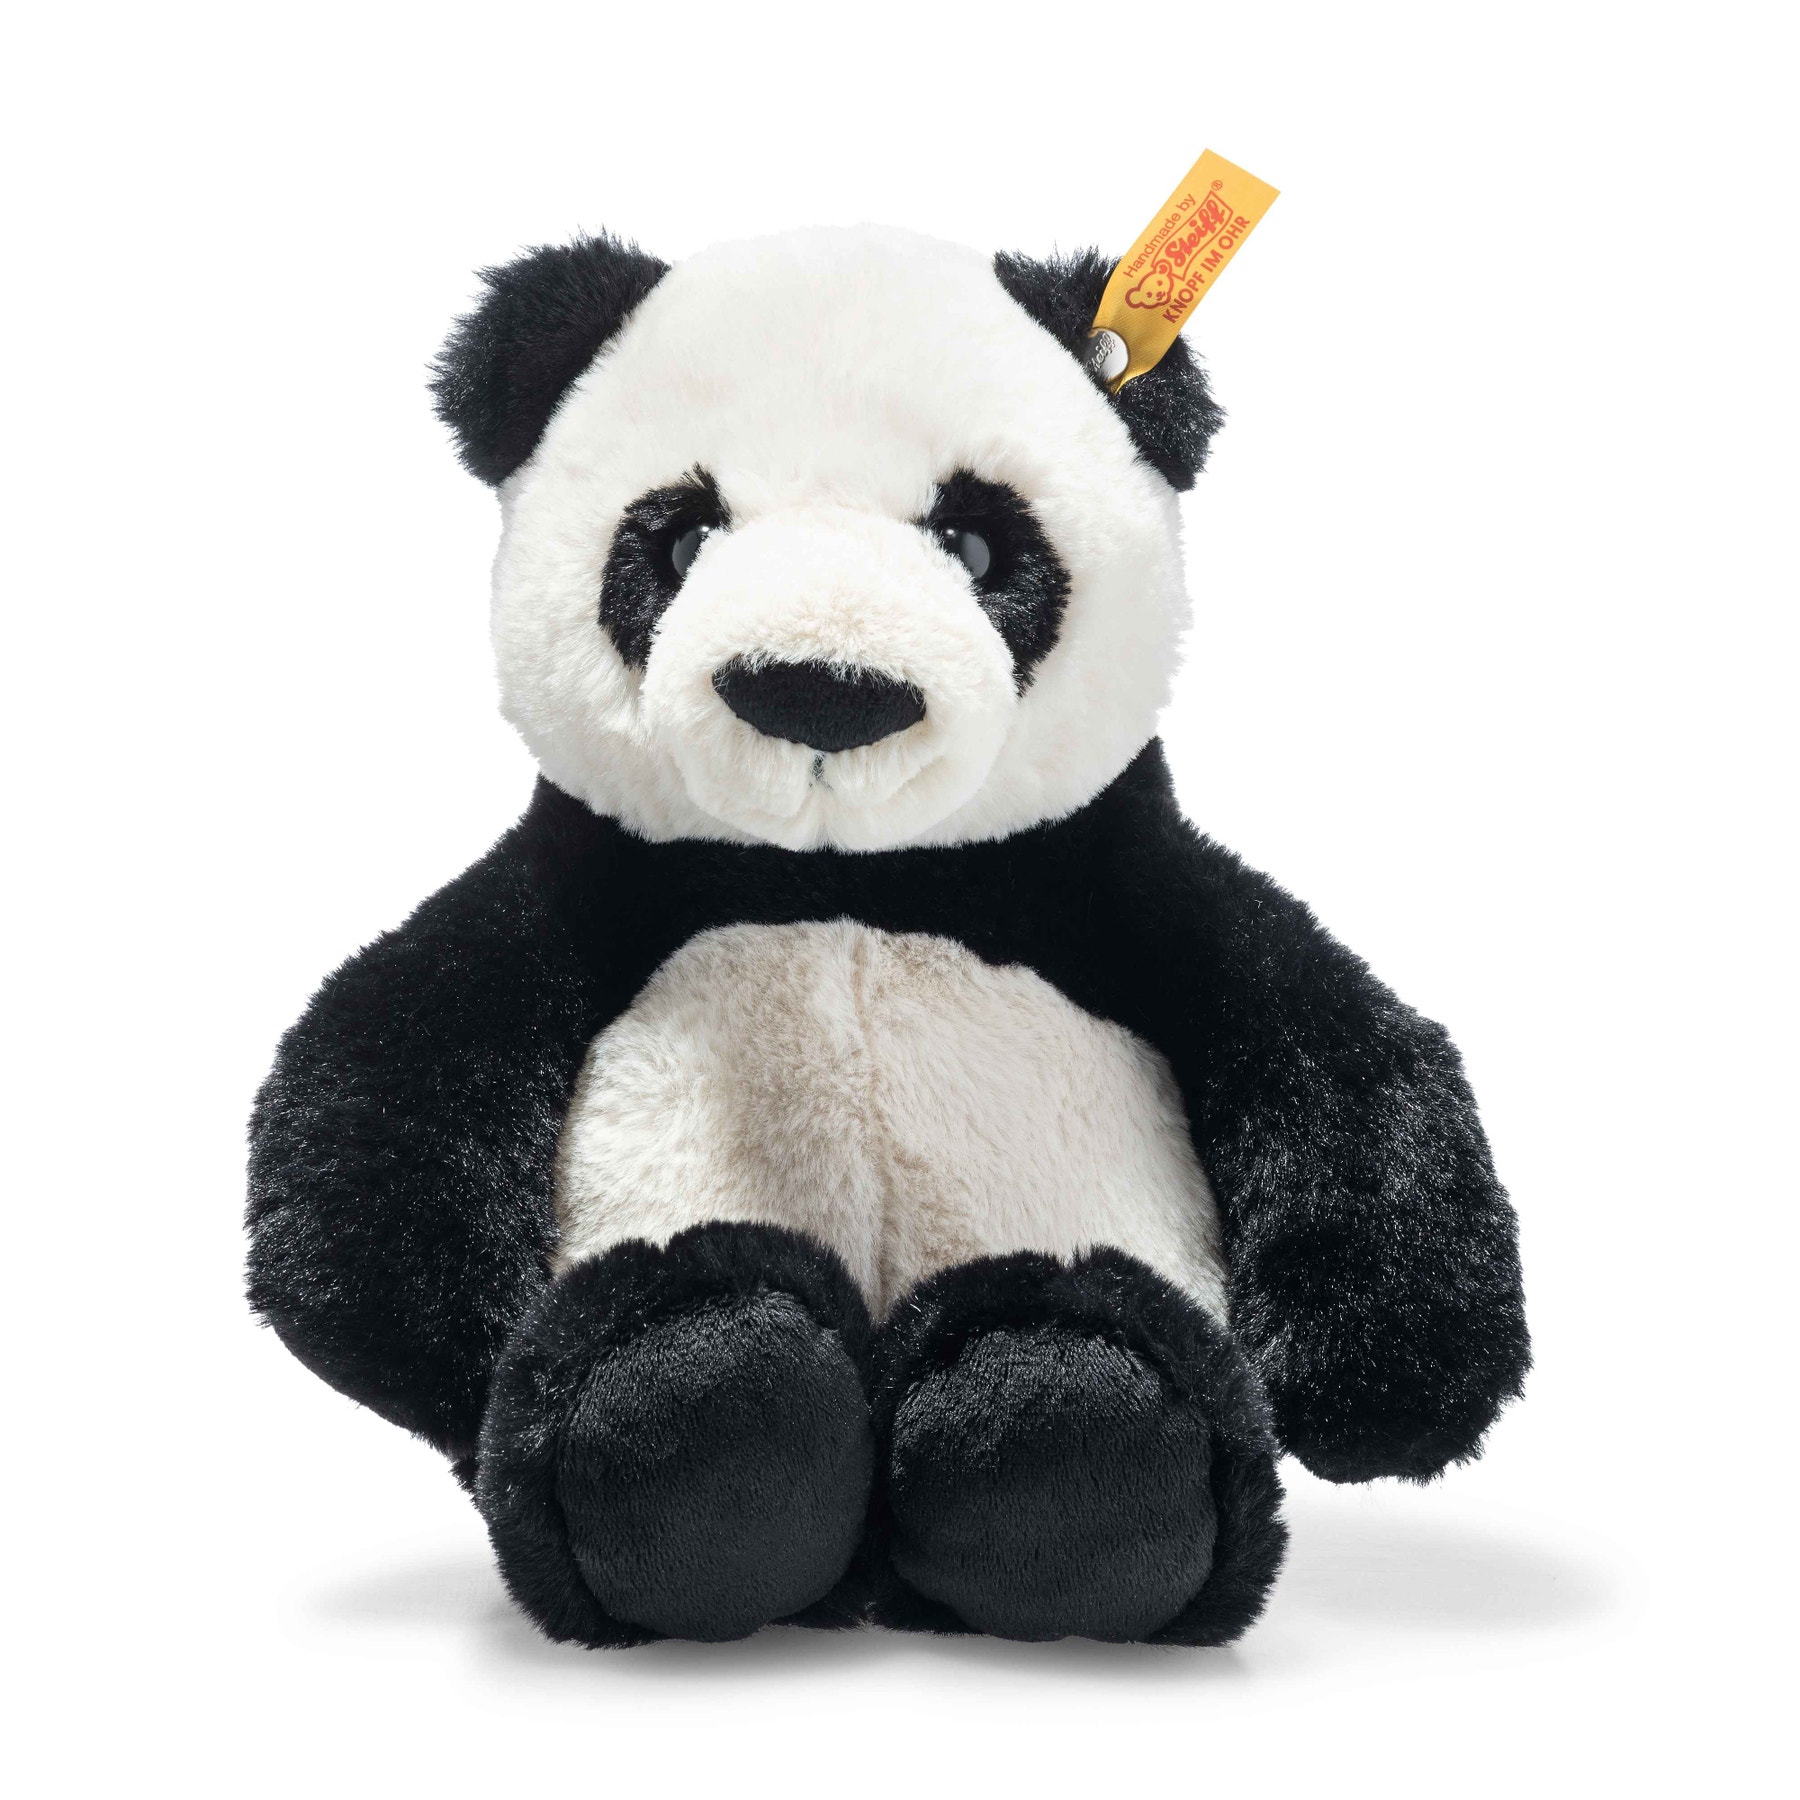 Ming panda